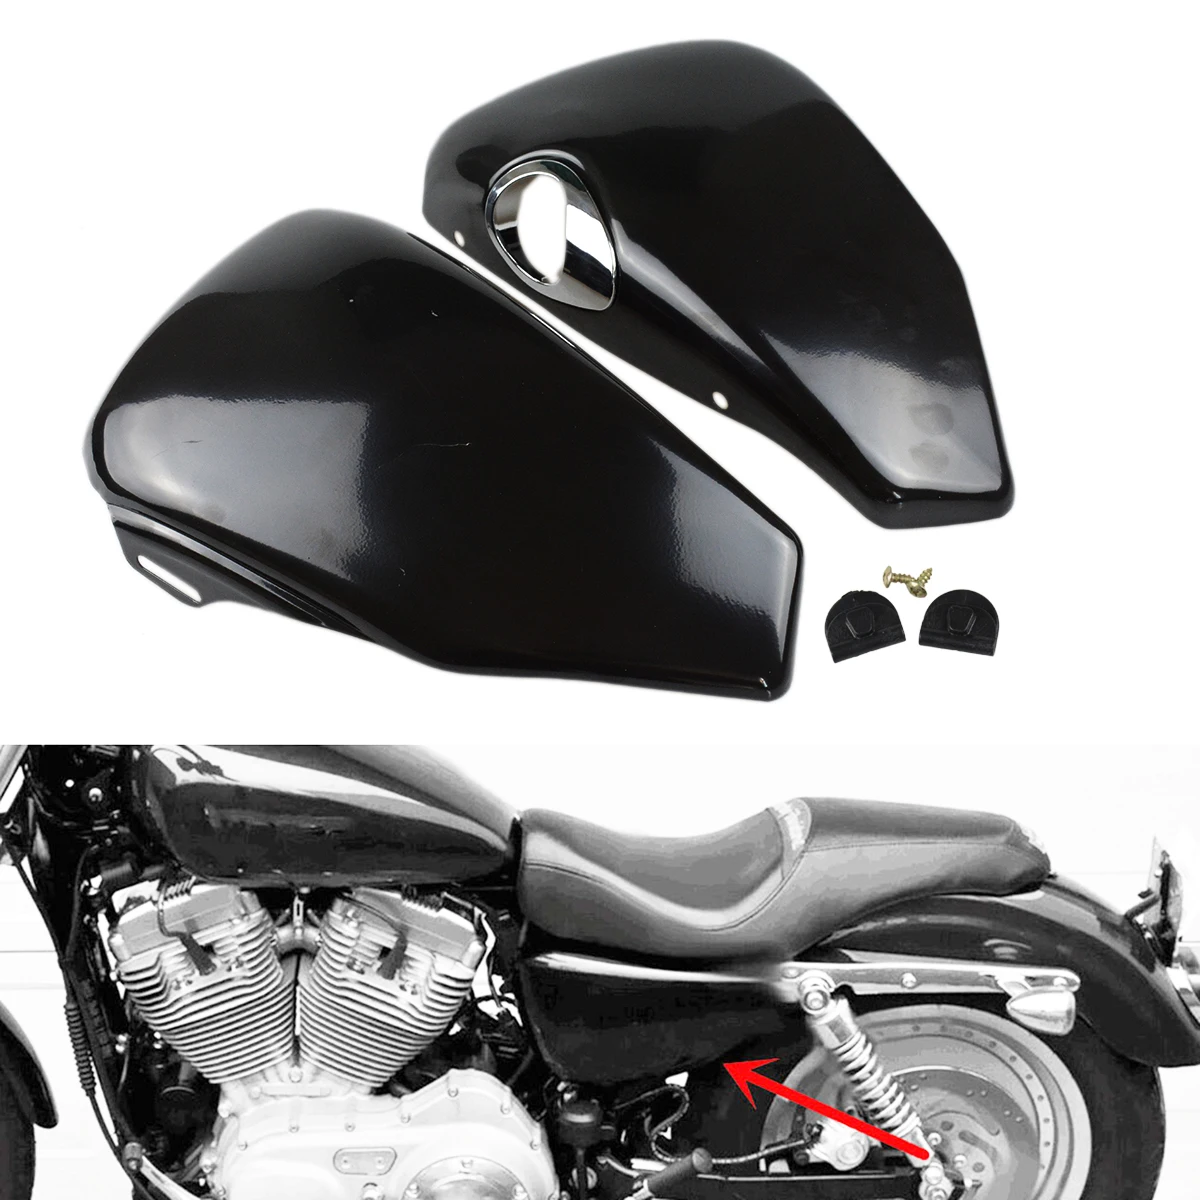 

Мотоциклетный черный/Хромированный левый боковой обтекатель аккумулятора Подходит для Harley Sportster XL Iron 883 1200 Custom Forty Eight